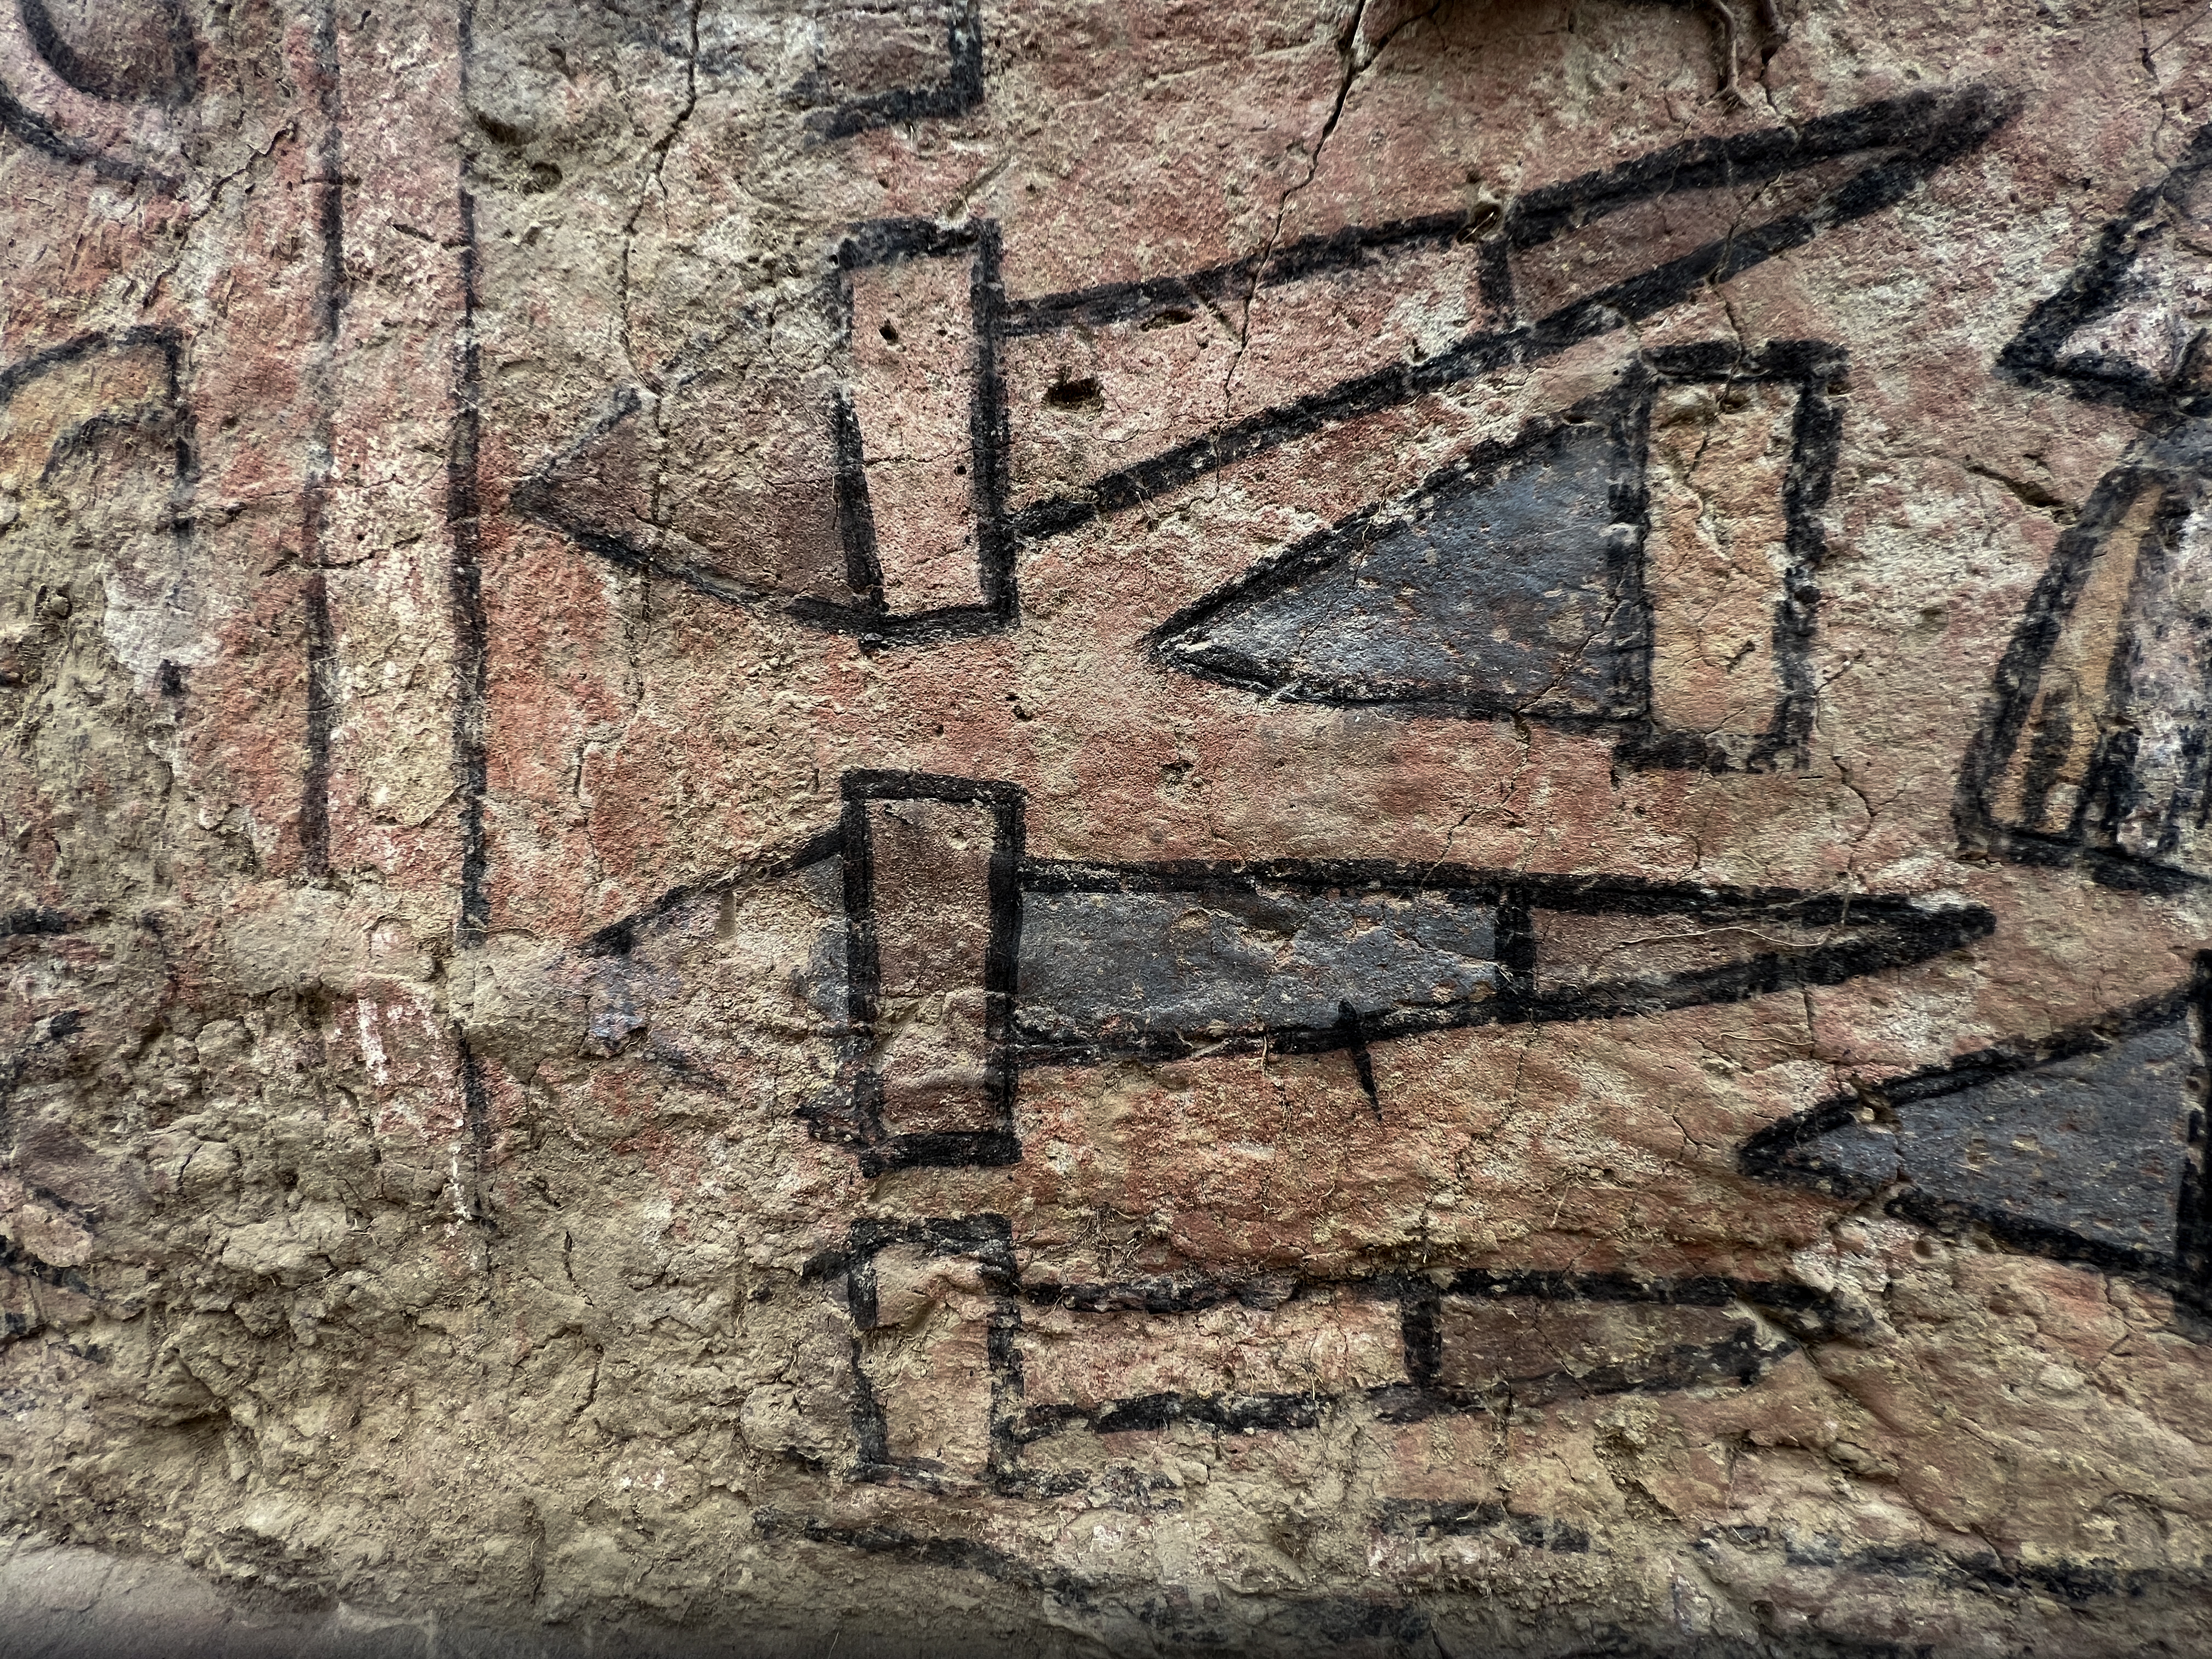 Detalle de la pintura mural prehispánica con escenas mitológicas descubierta cerca del pueblo de Illimo en Lambayeque, en el norte de Perú, después de décadas (Photo by Sam Ghavami / AFP)